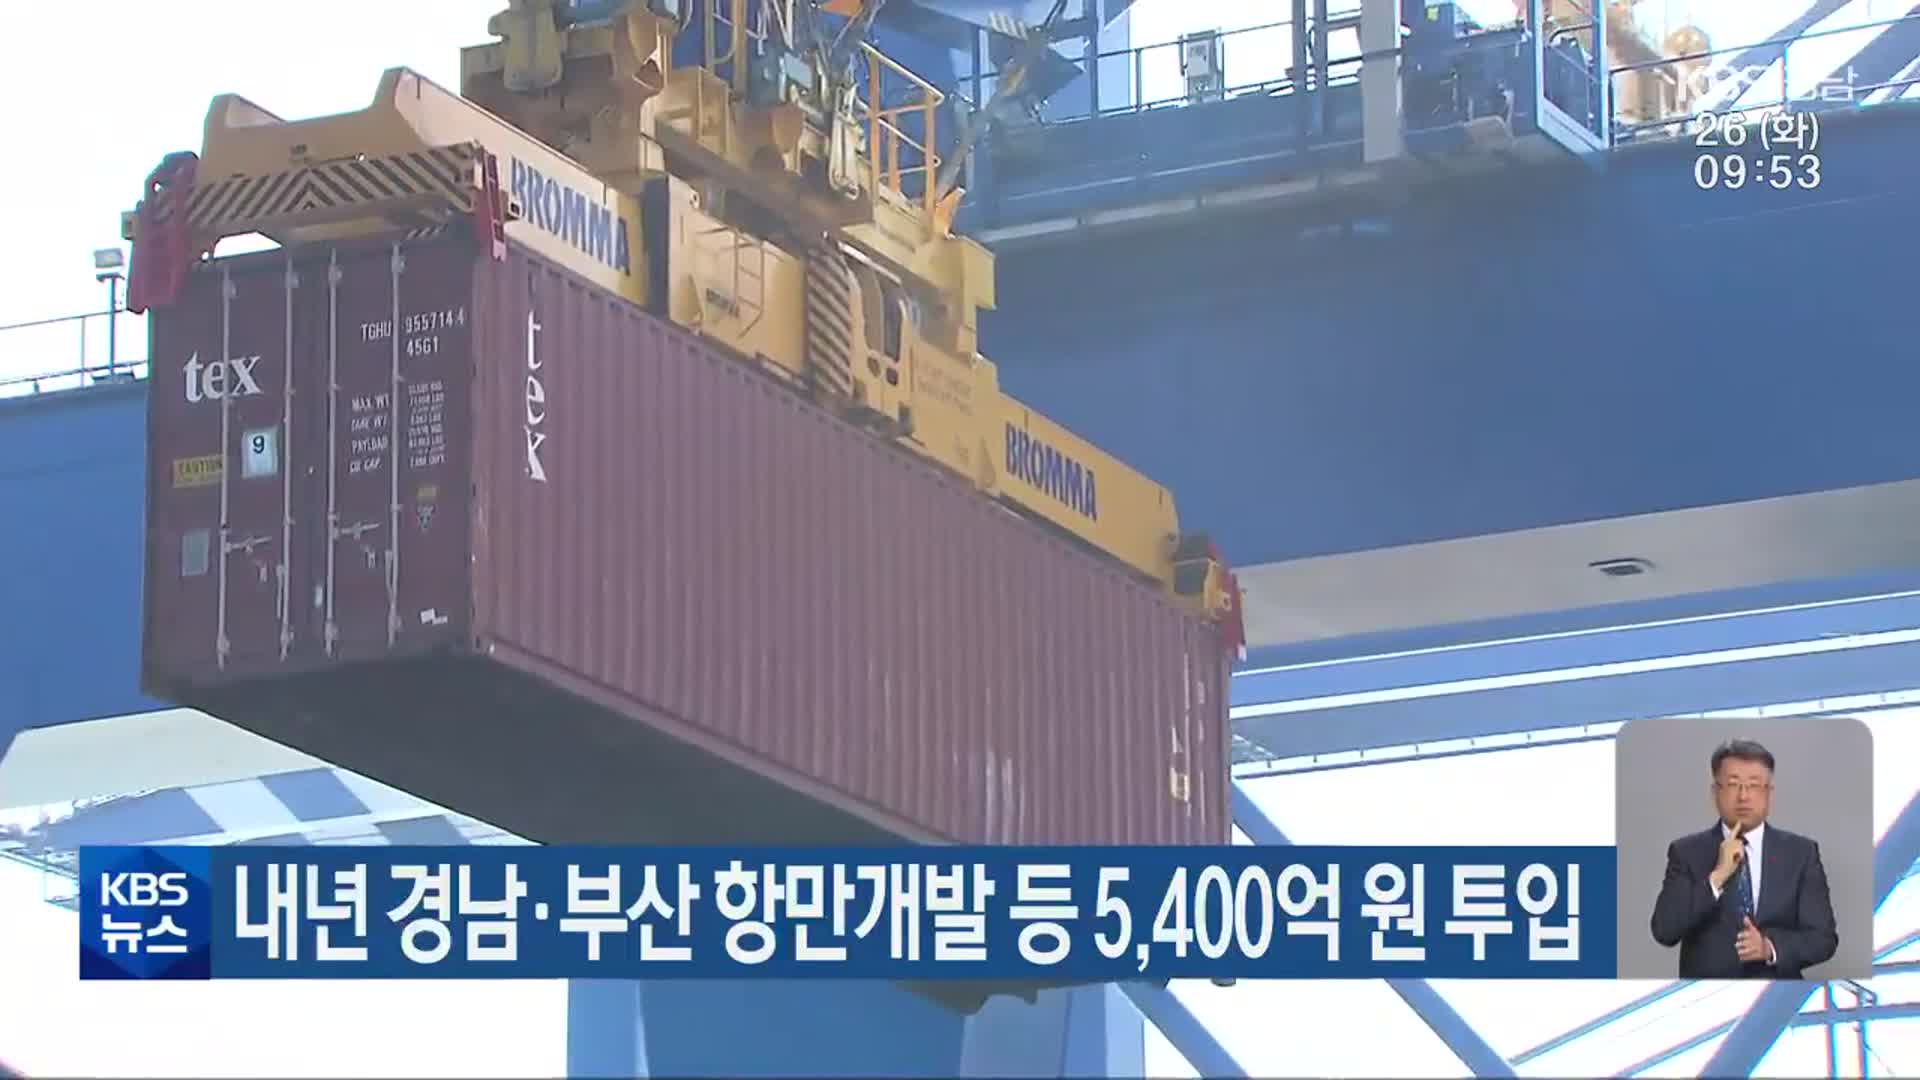 내년 경남·부산 항만개발 등 5,400억 원 투입